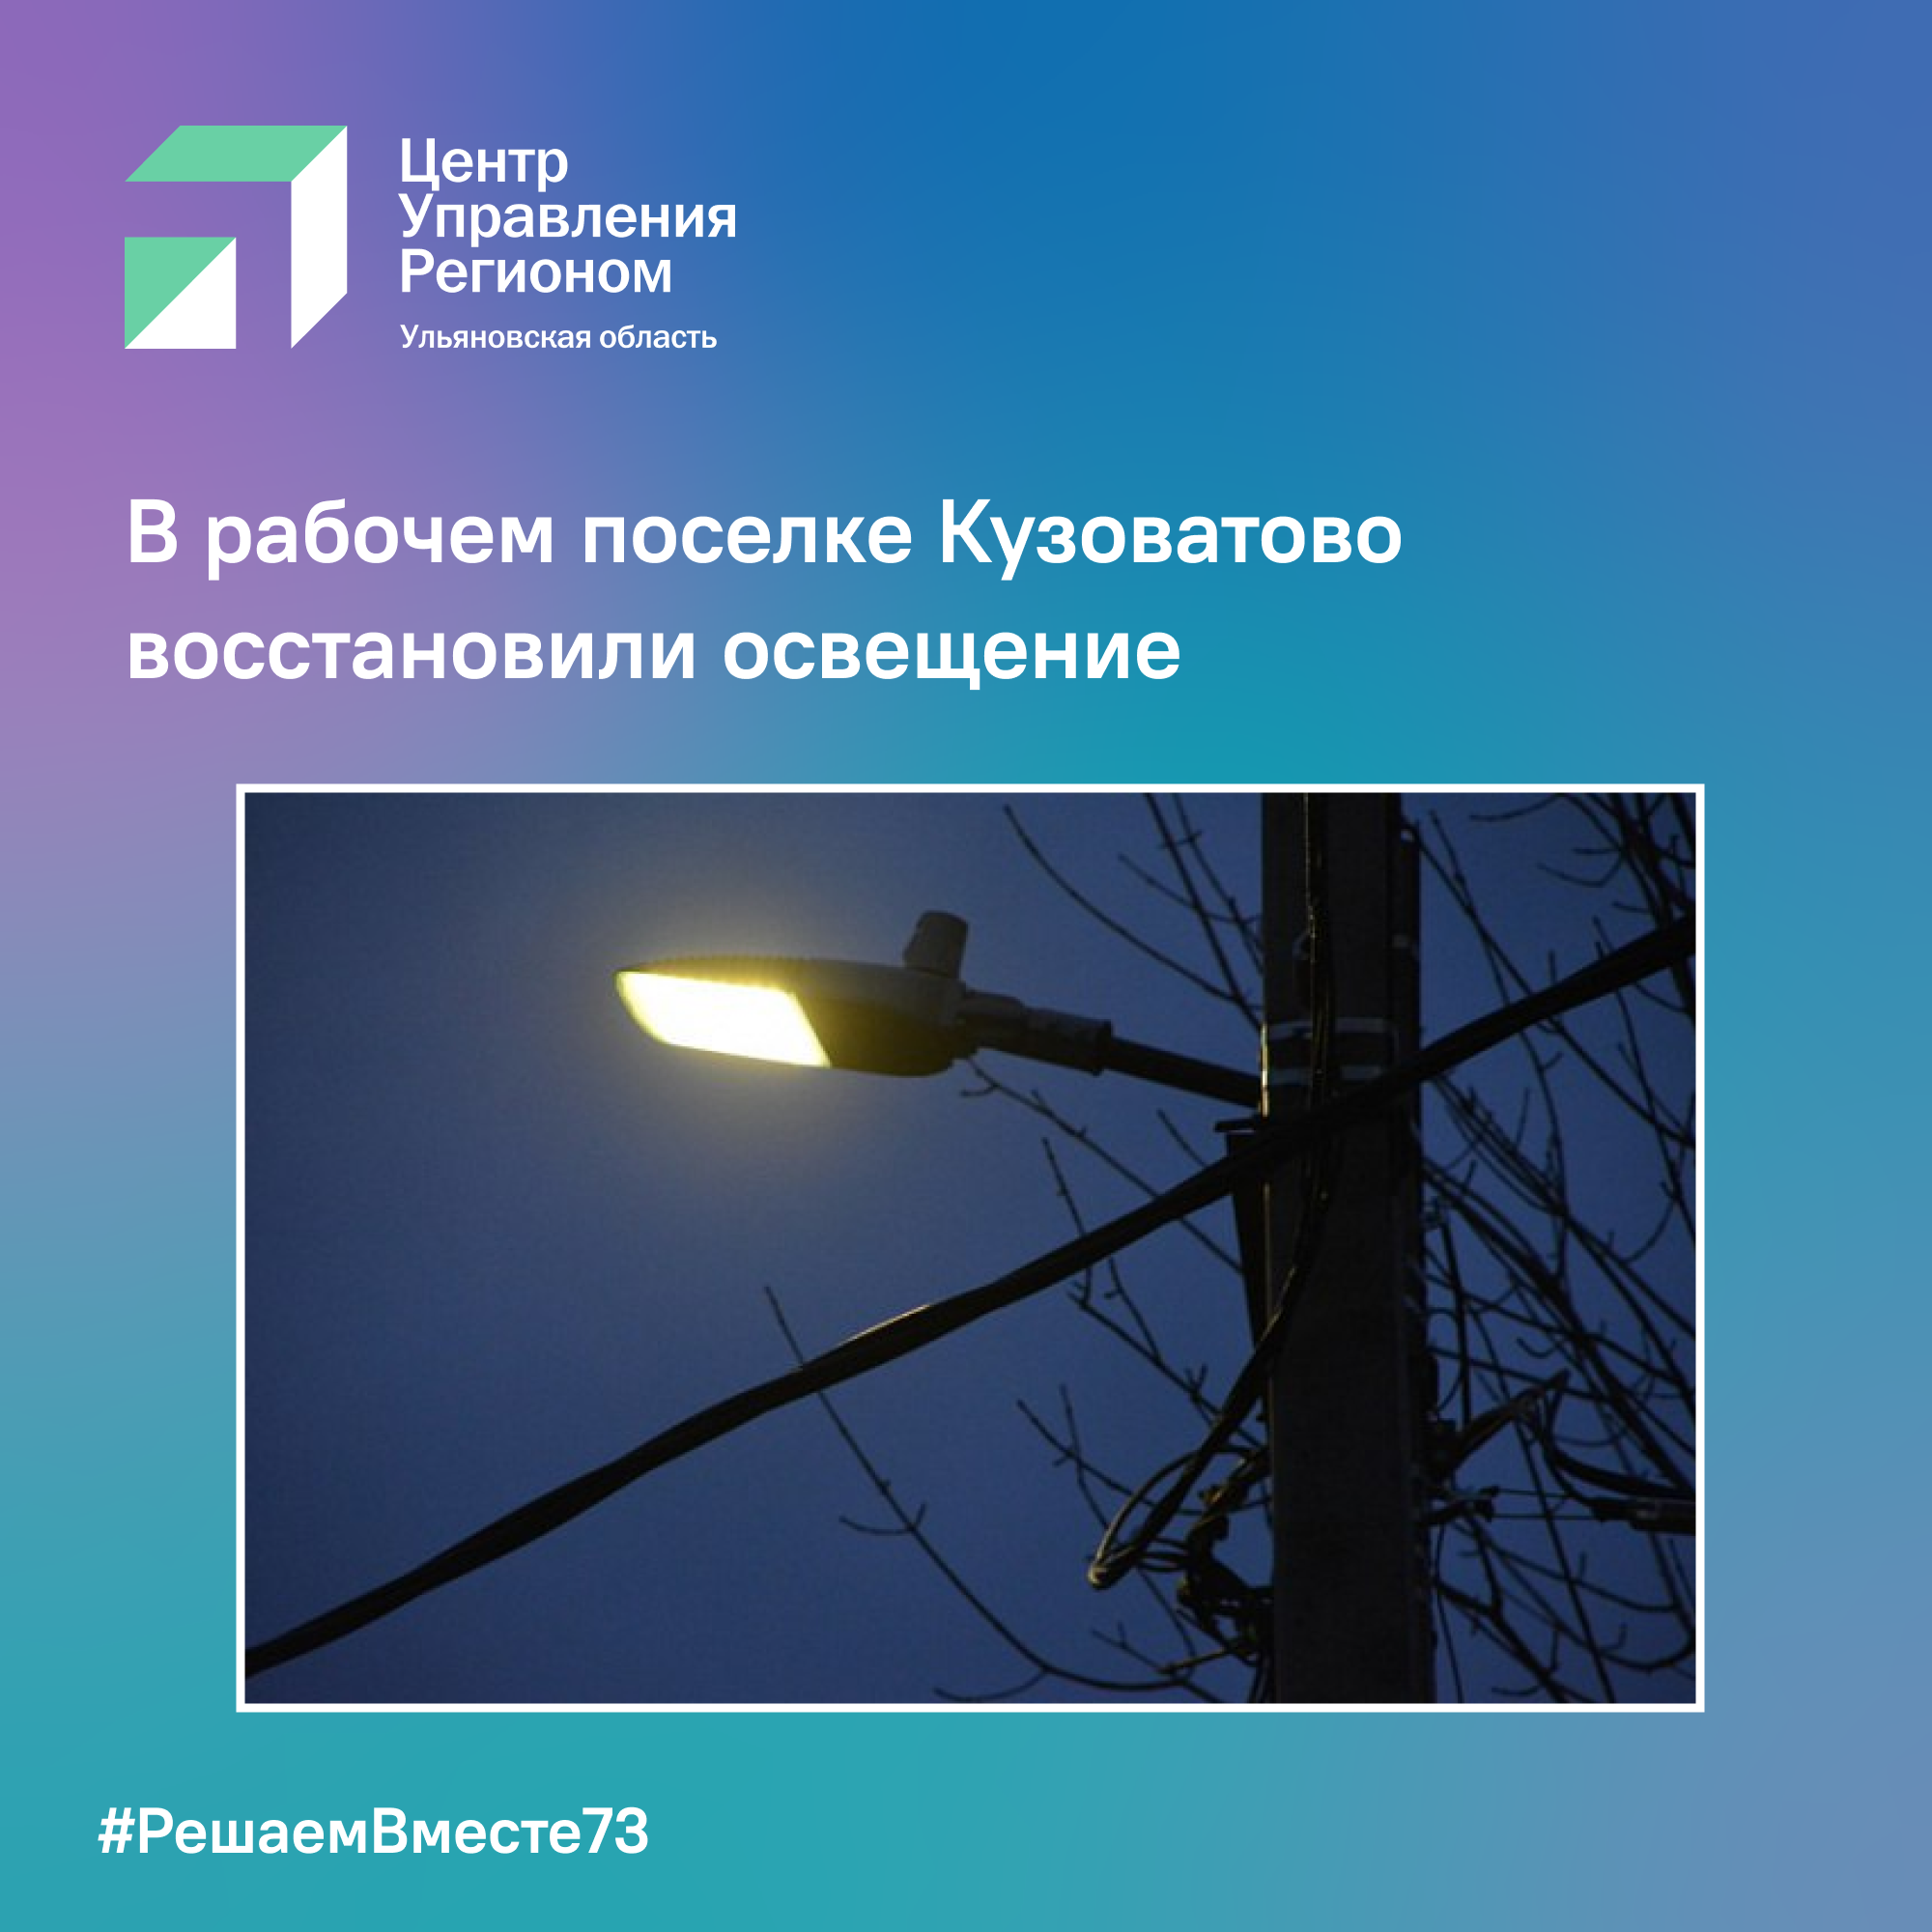 В рабочем поселке Кузоватово восстановили освещение.